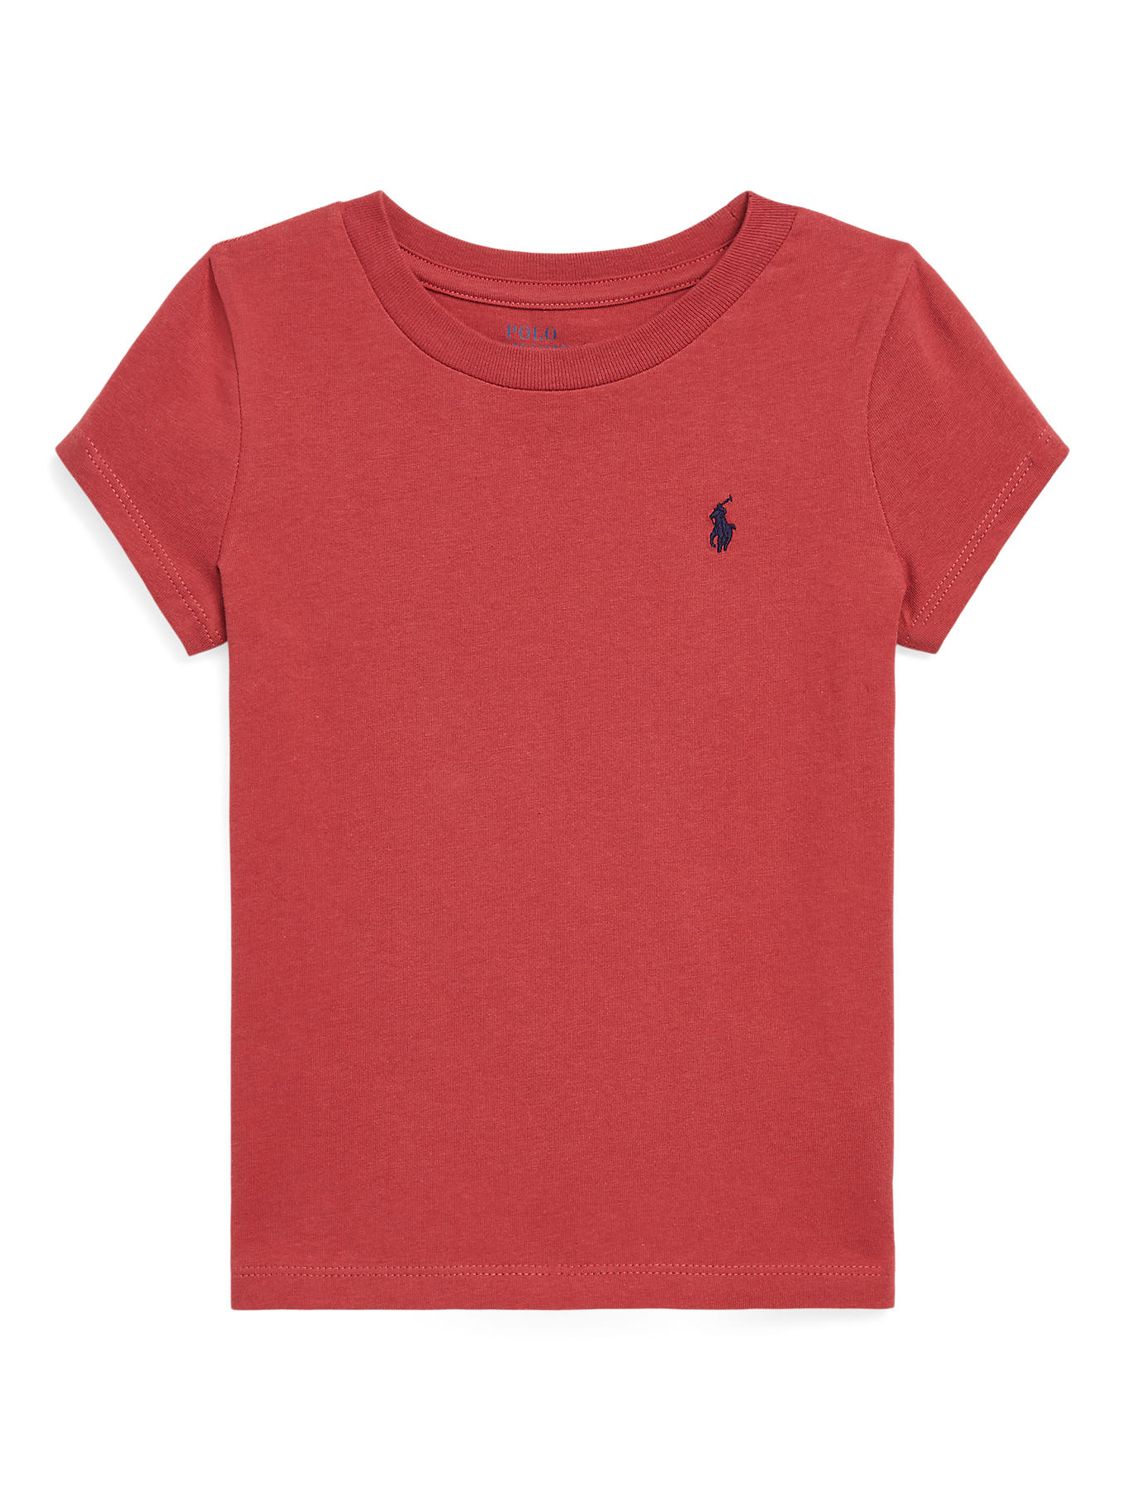 del øre Bourgogne Ralph Lauren Kids' Logo T-Shirt, Chilli Pepper at John Lewis & Partners